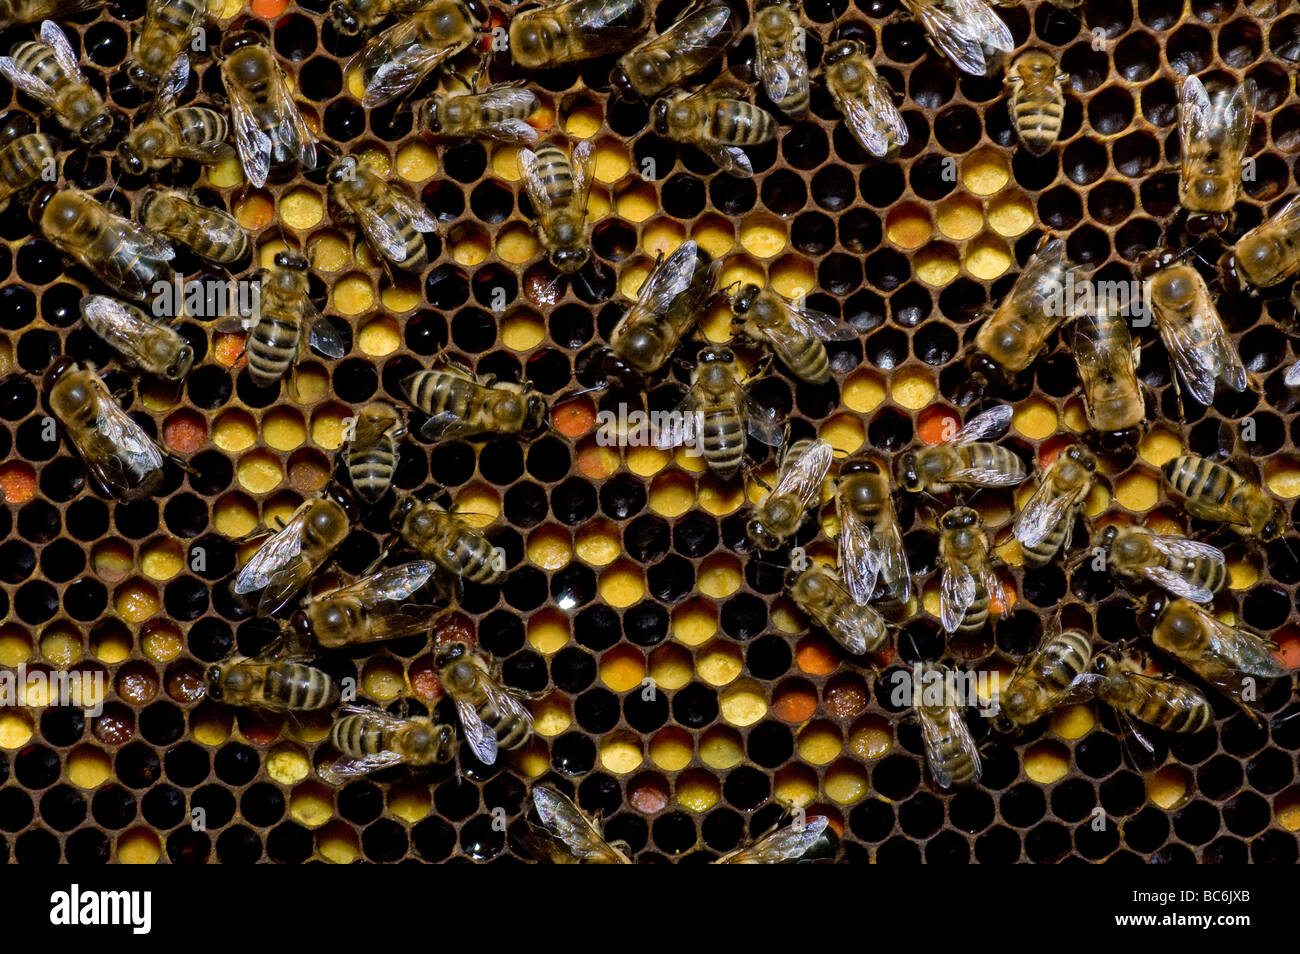 Beaucoup de travail sur les abeilles à miel pleine de miel et pollen Banque D'Images